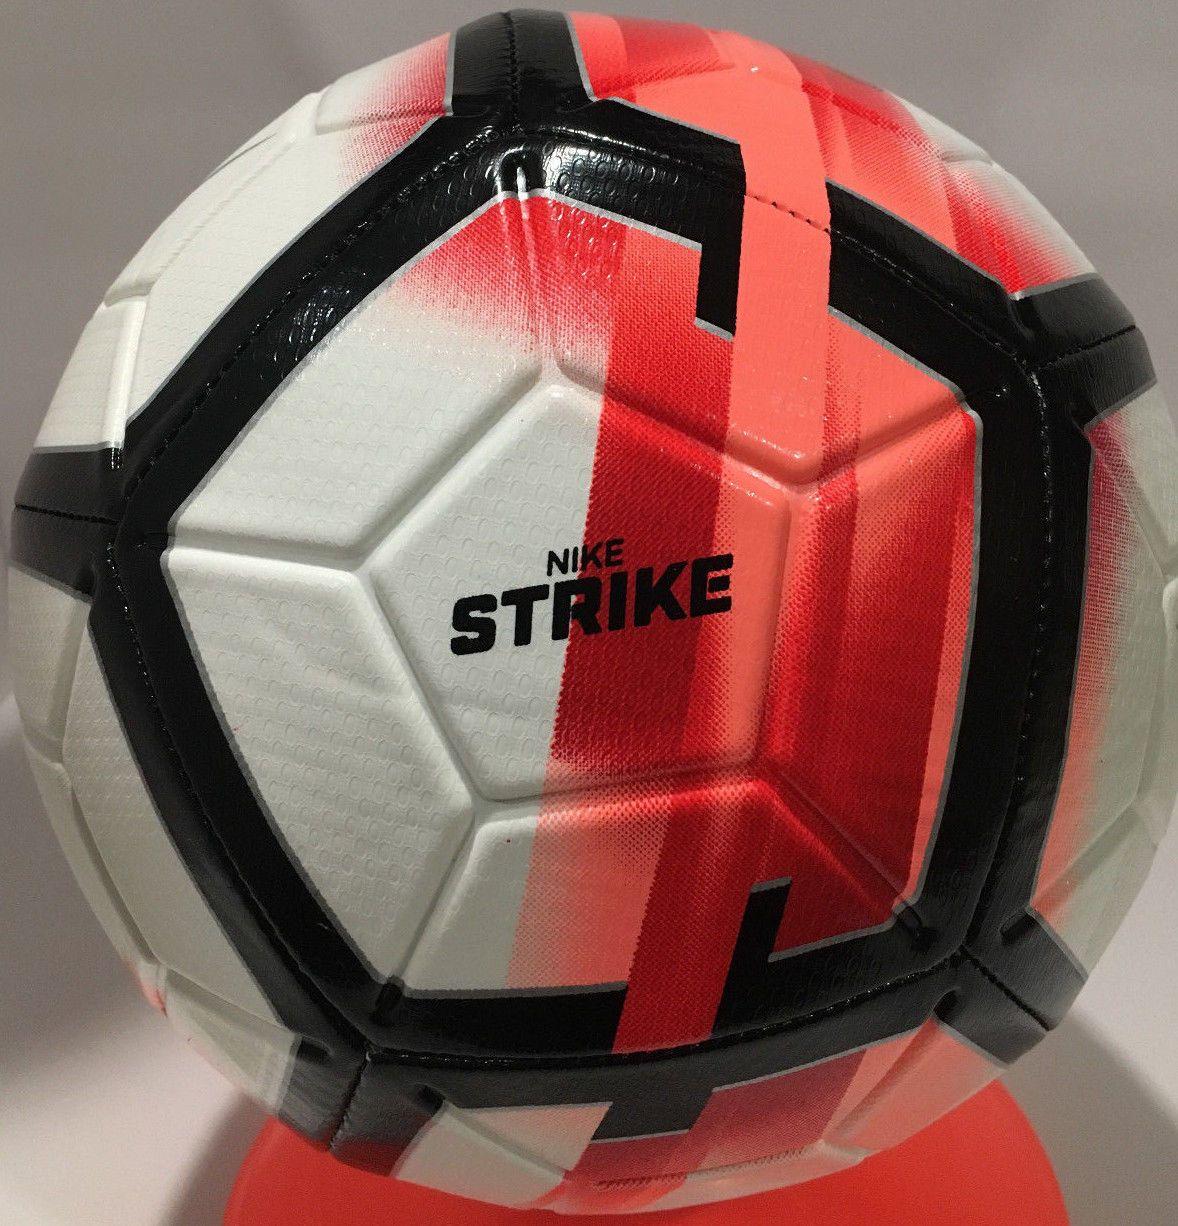 Red and White Soccer Ball Logo - Nike Strike Soccer Ball (red/white) (size 5) Sc3147 102 | eBay